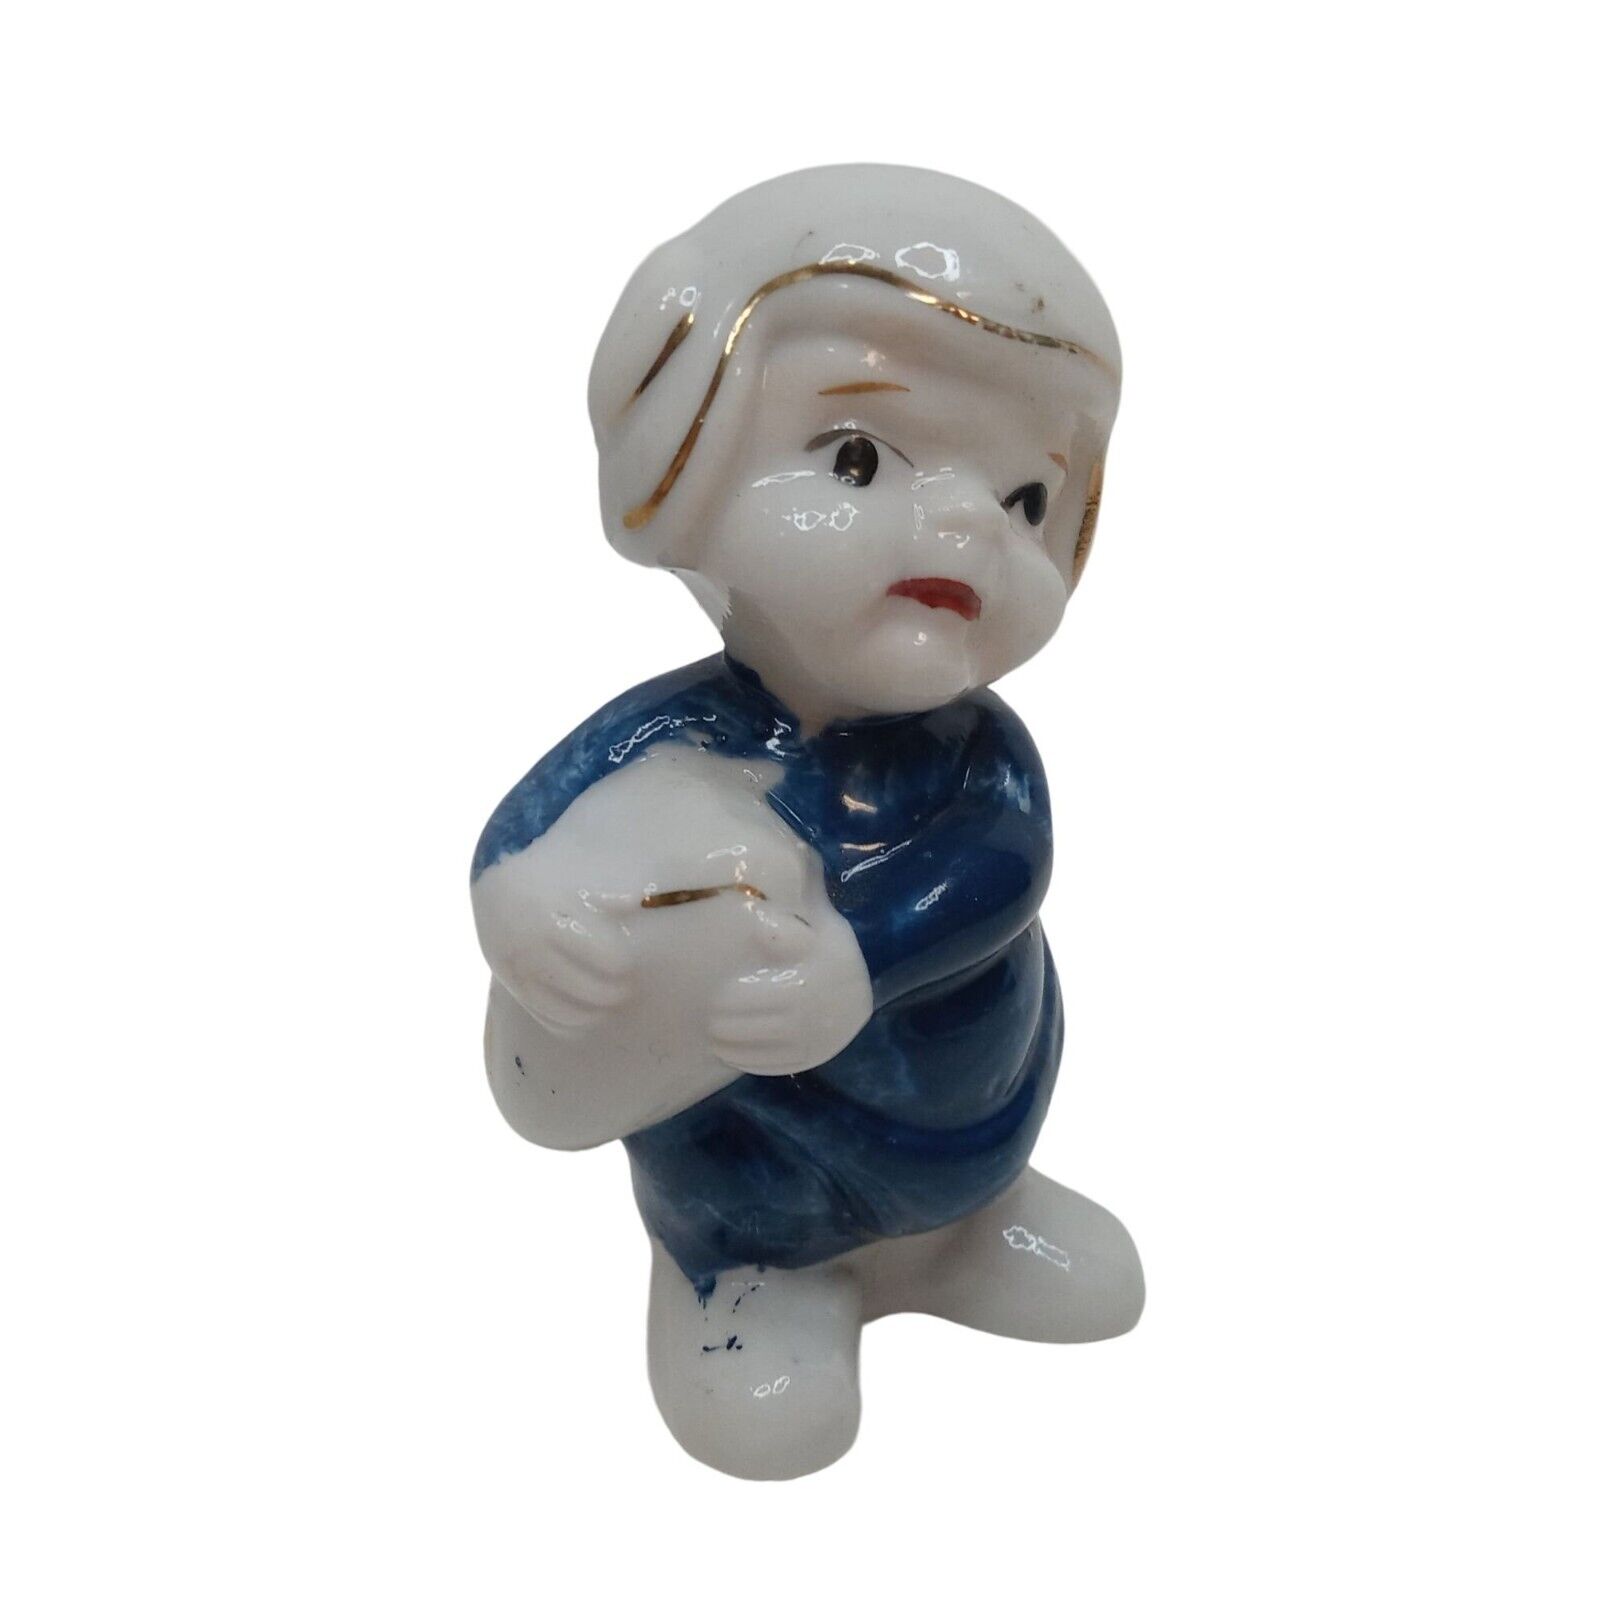 Vintage MIJ Football Player Porcelain Made in Japan